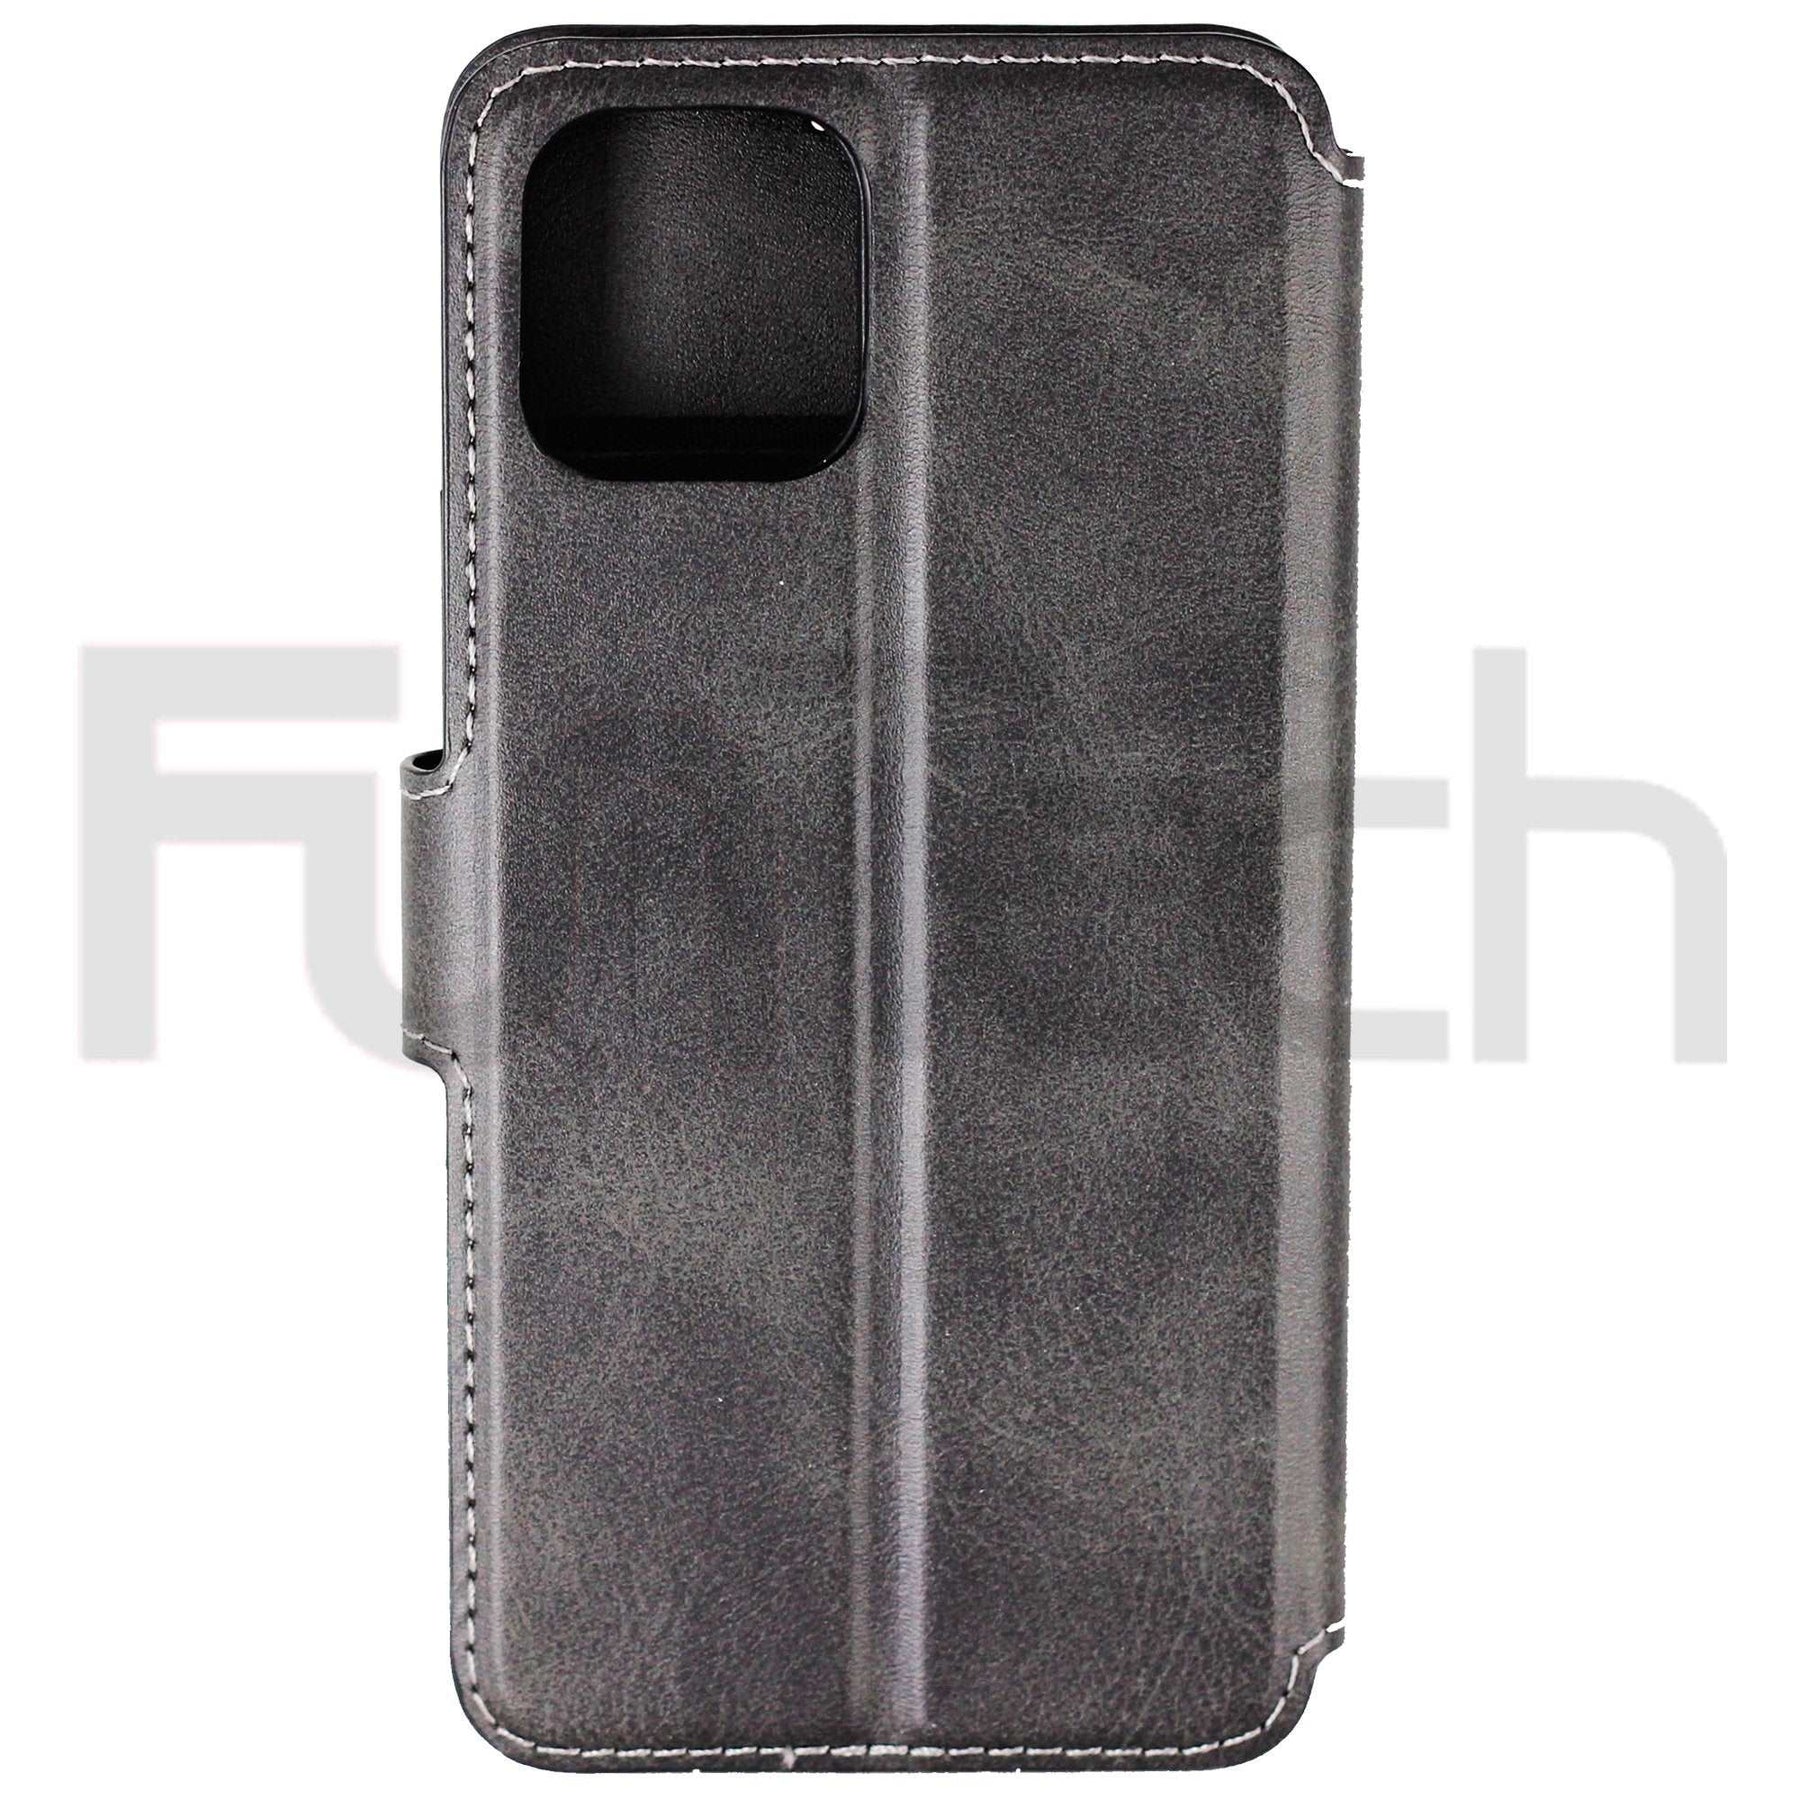 Apple iPhone 11 Pro Premium Leather Case Black